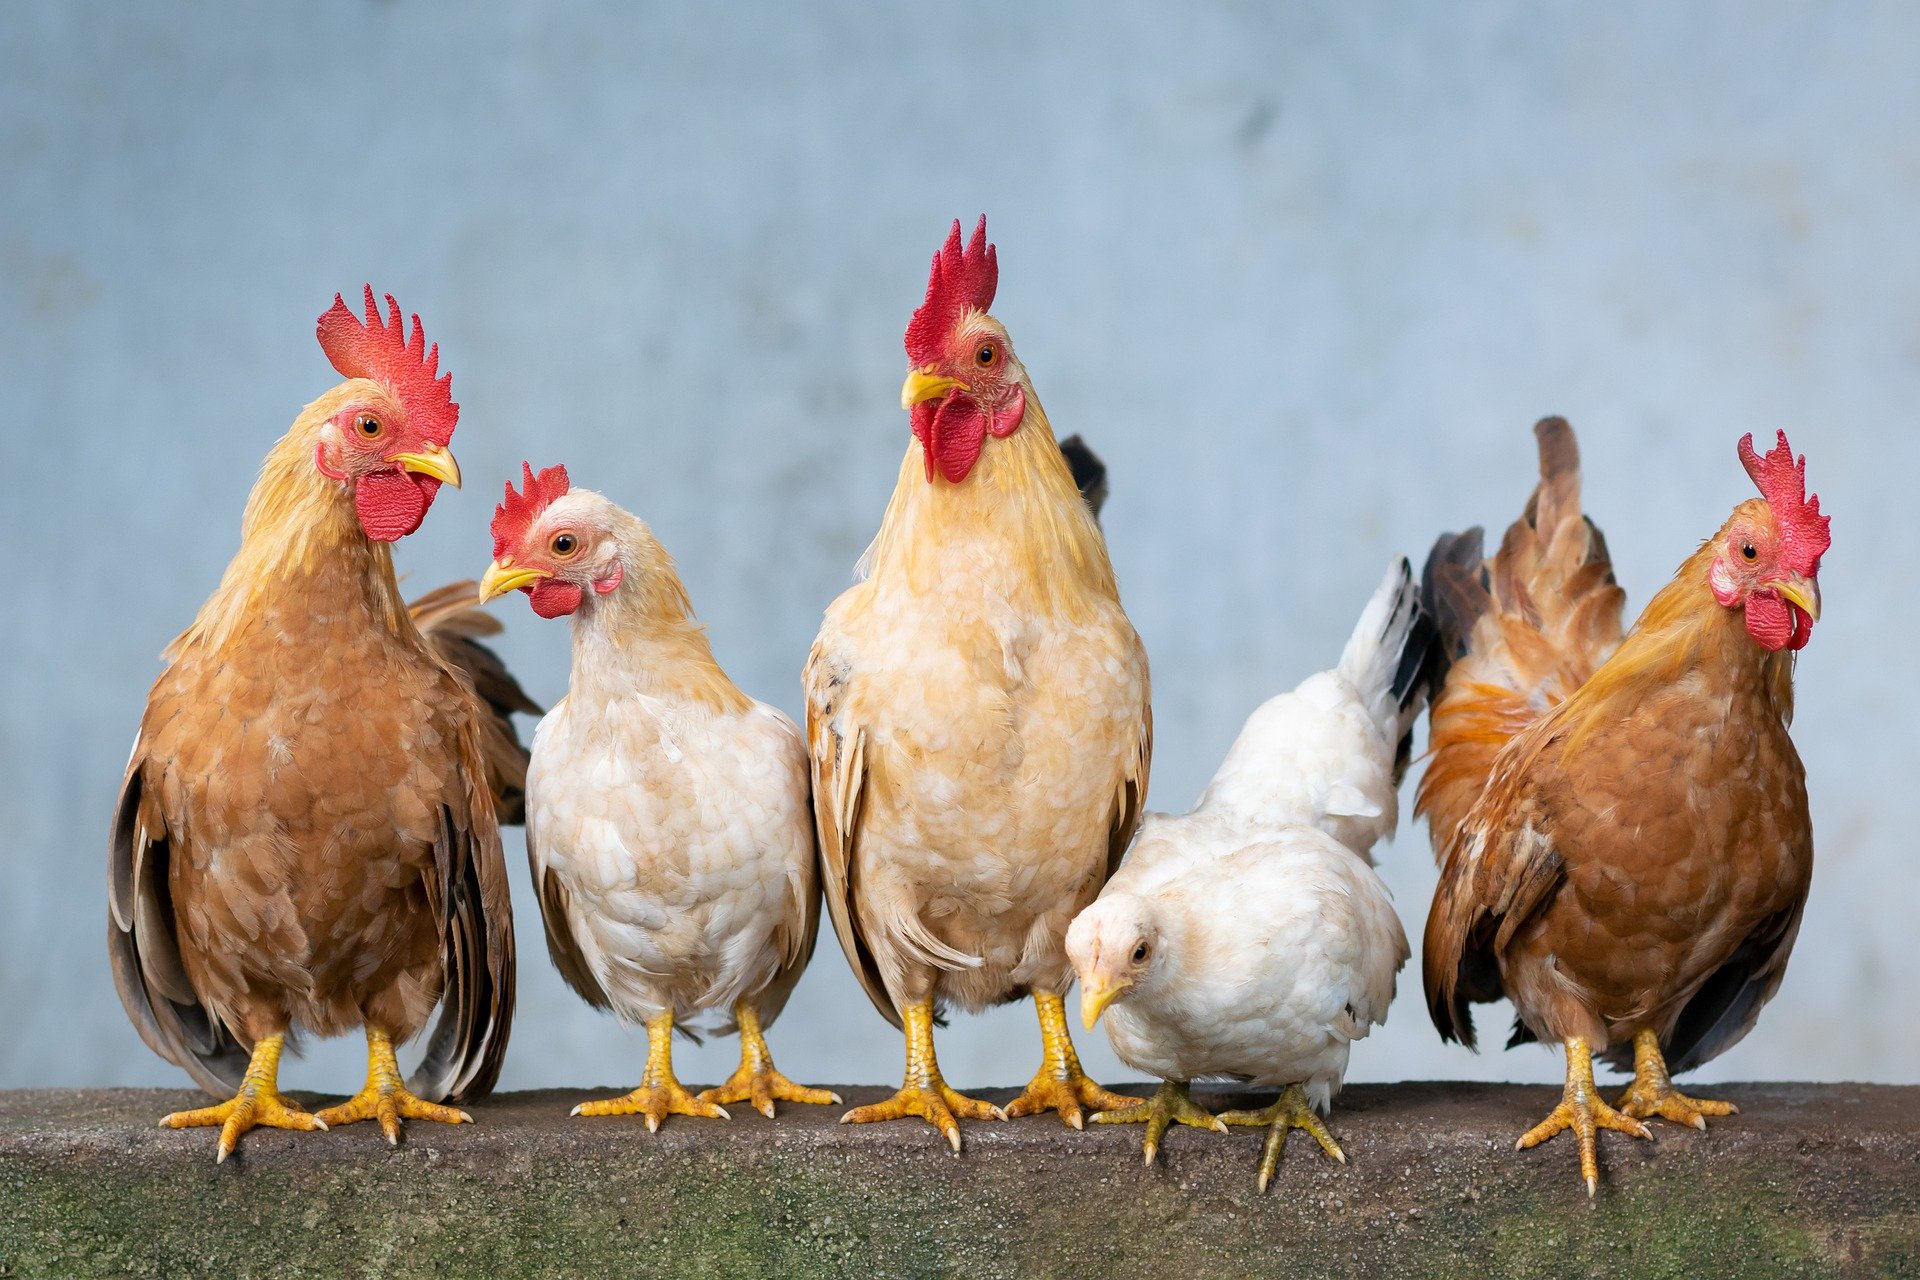 Κοτόπουλο: Τρώγοντας ρύζι, από εξωτικό πτηνό έγινε κατοικίδιο